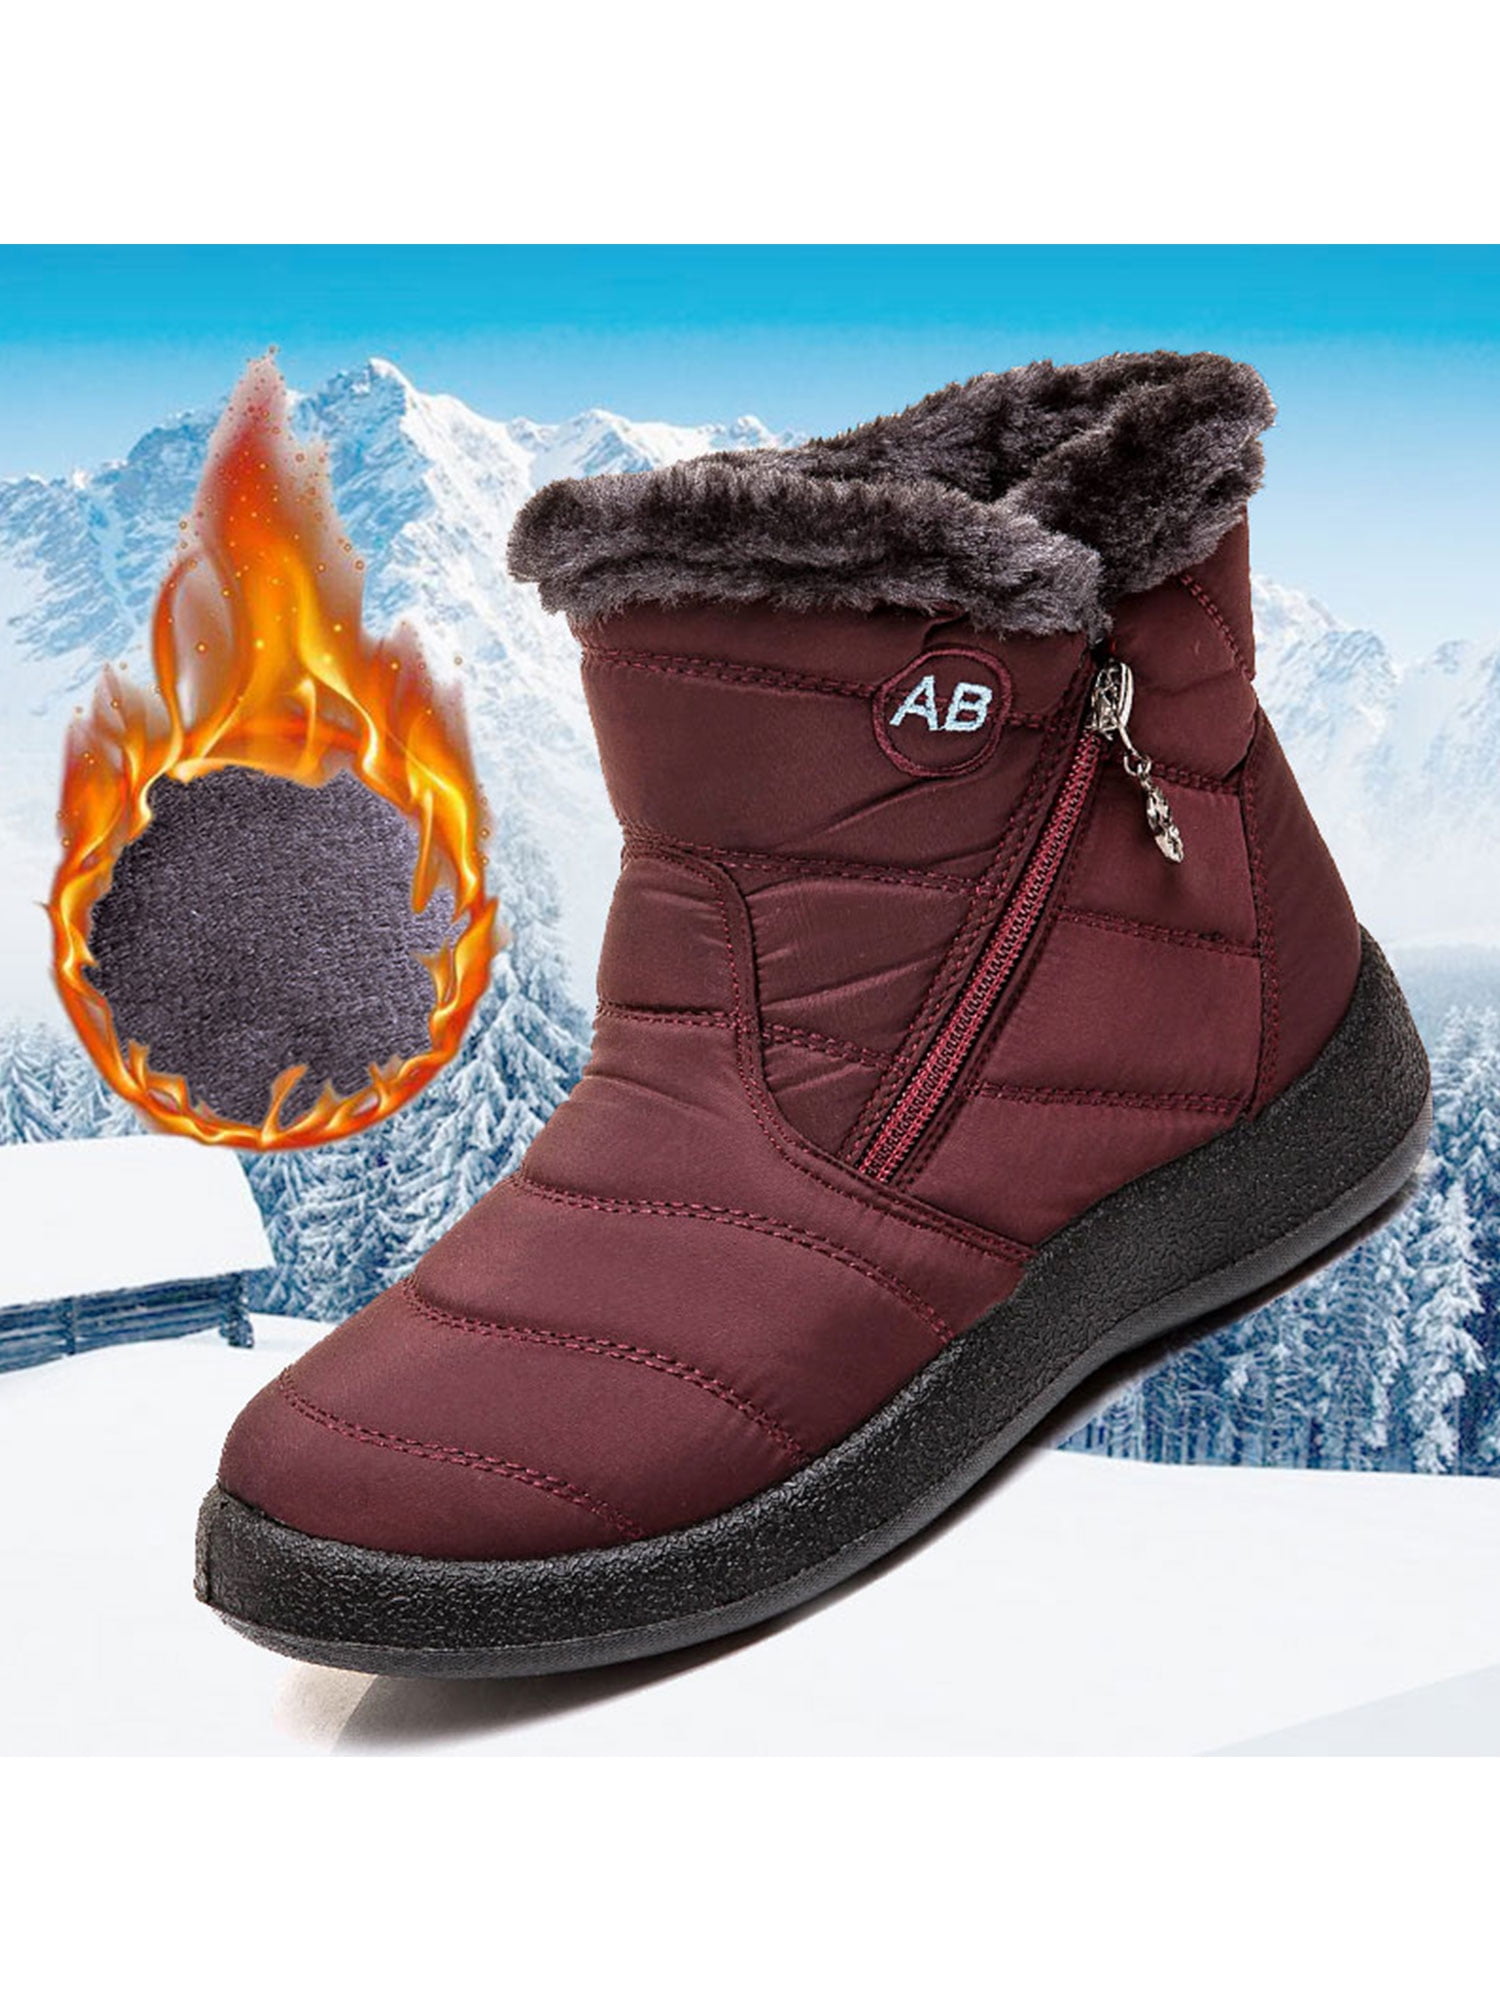 Frontwalk Ladies Combat Boot Plush Lining Warm Shoes Waterproof Snow Boots  Outdoor Side Zip Women Platform Brown 4.5 